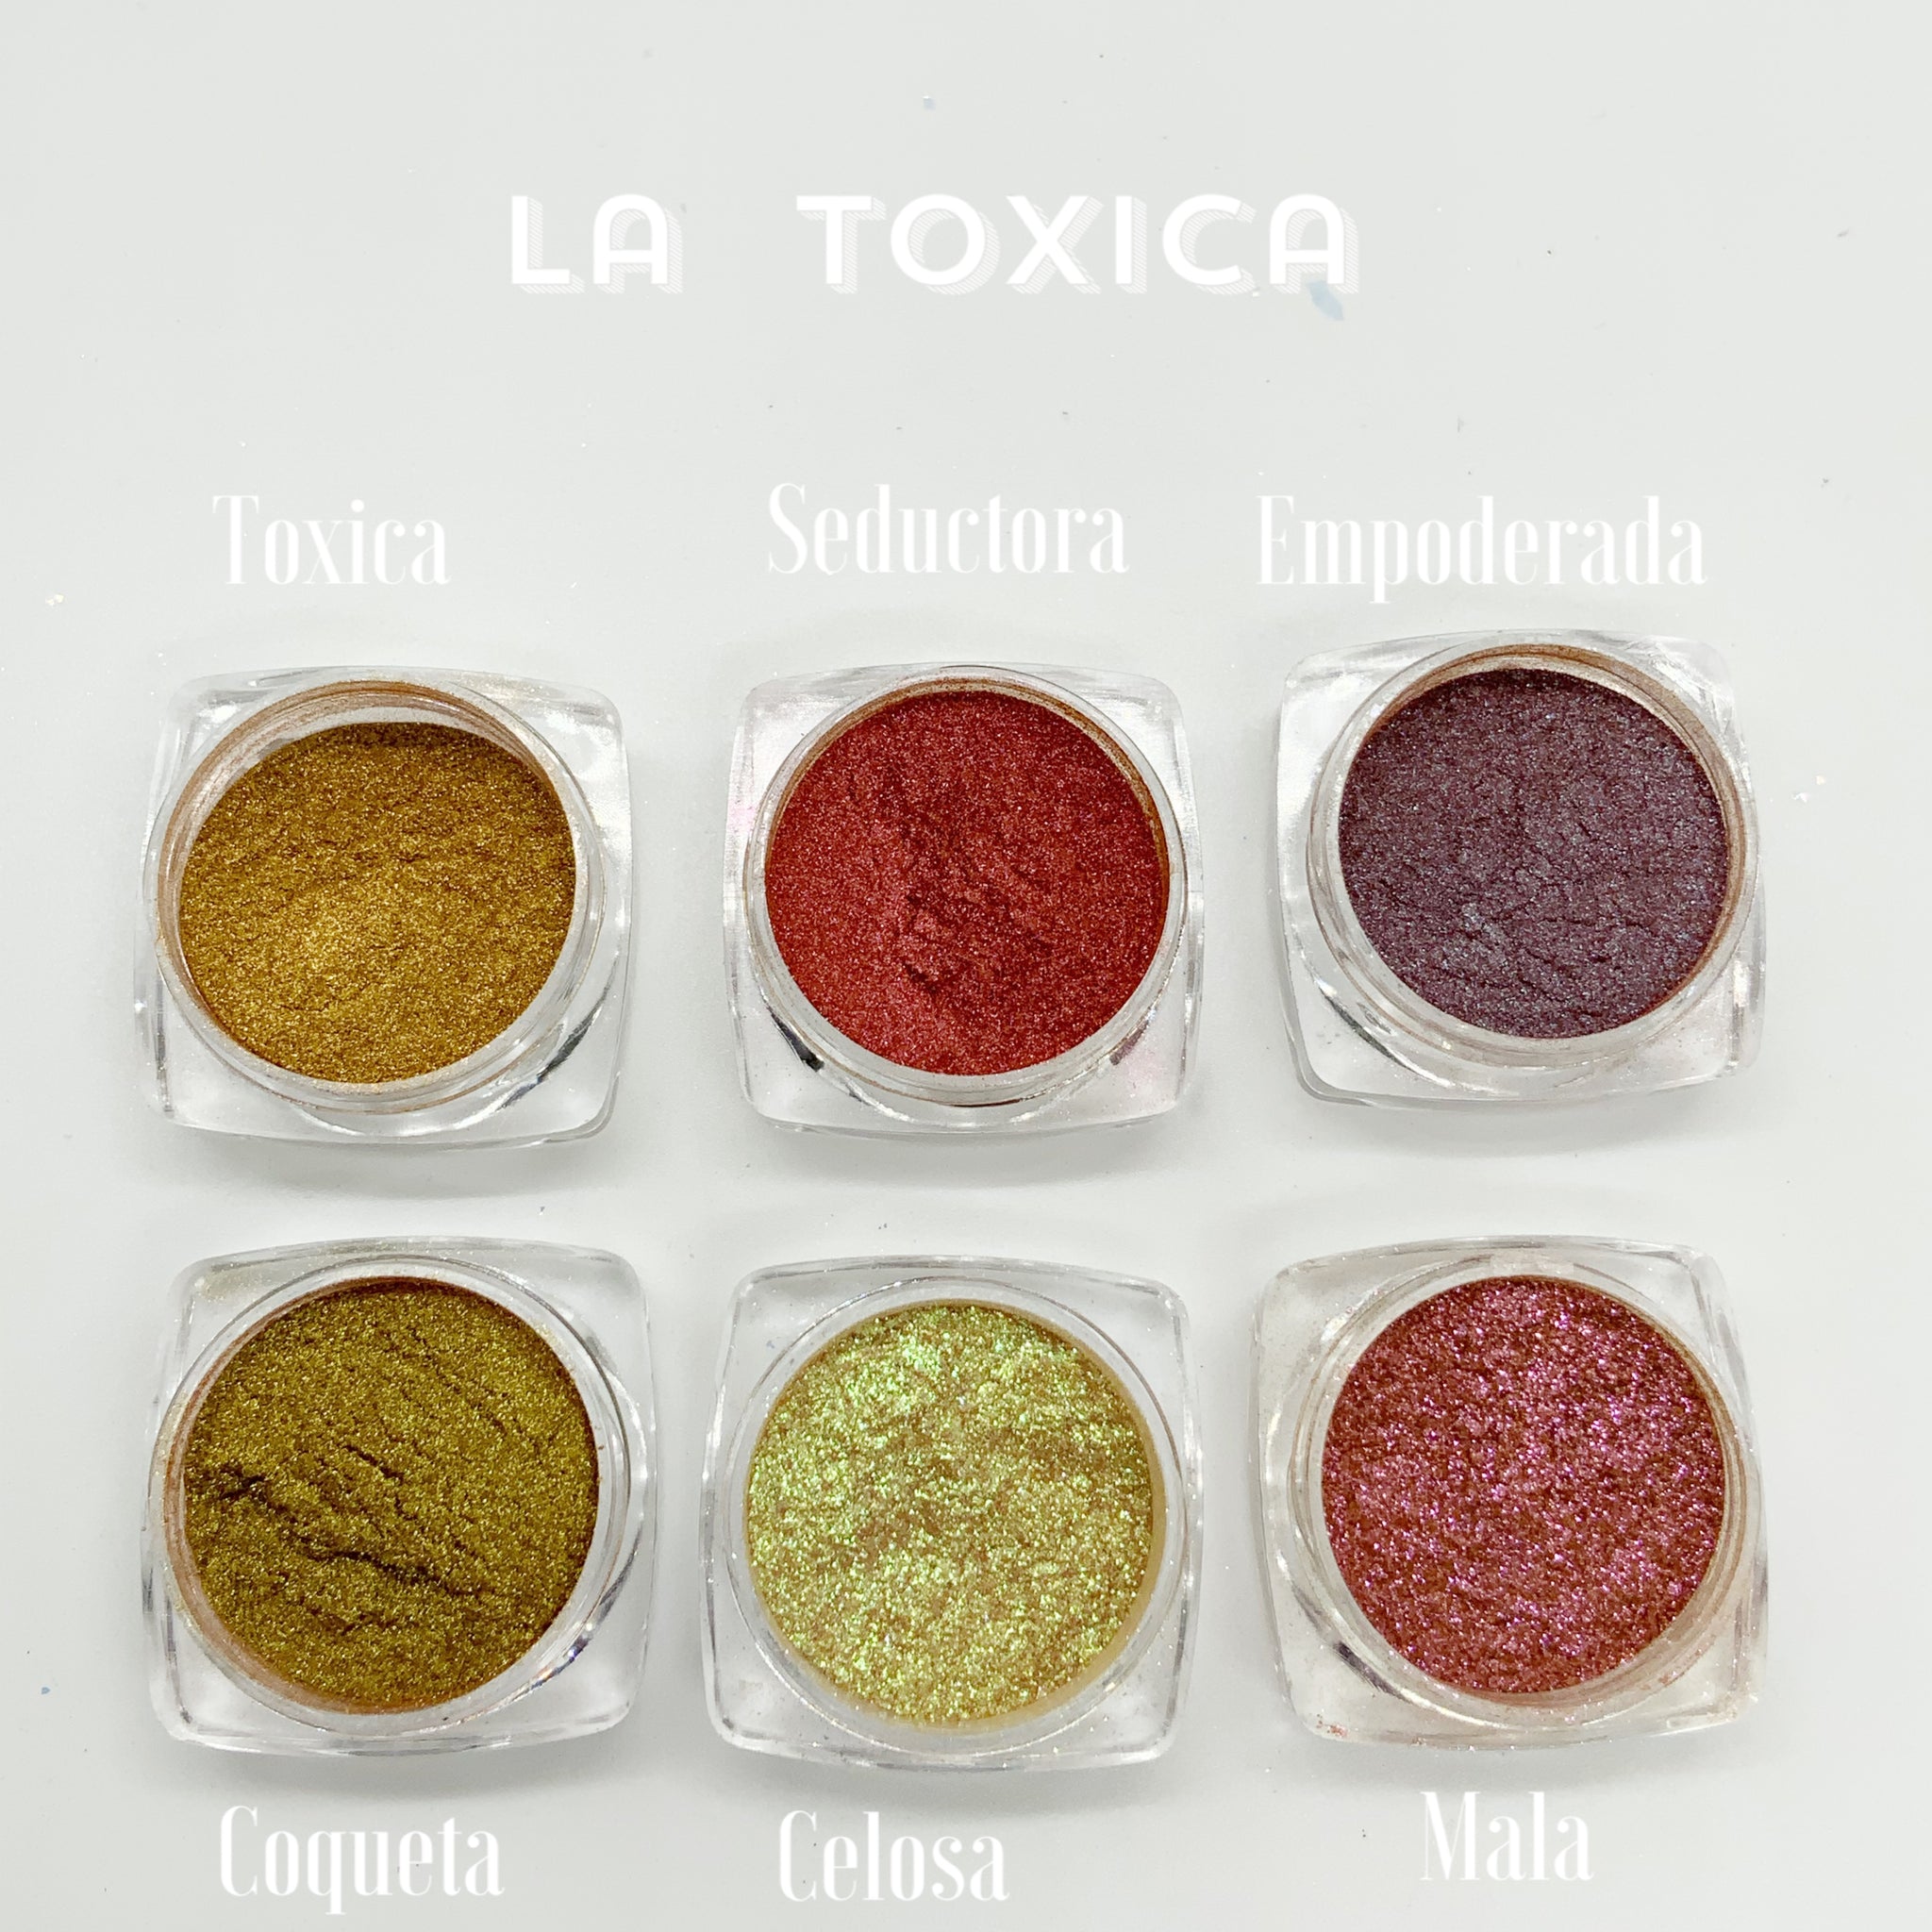 La Toxica loose pigments